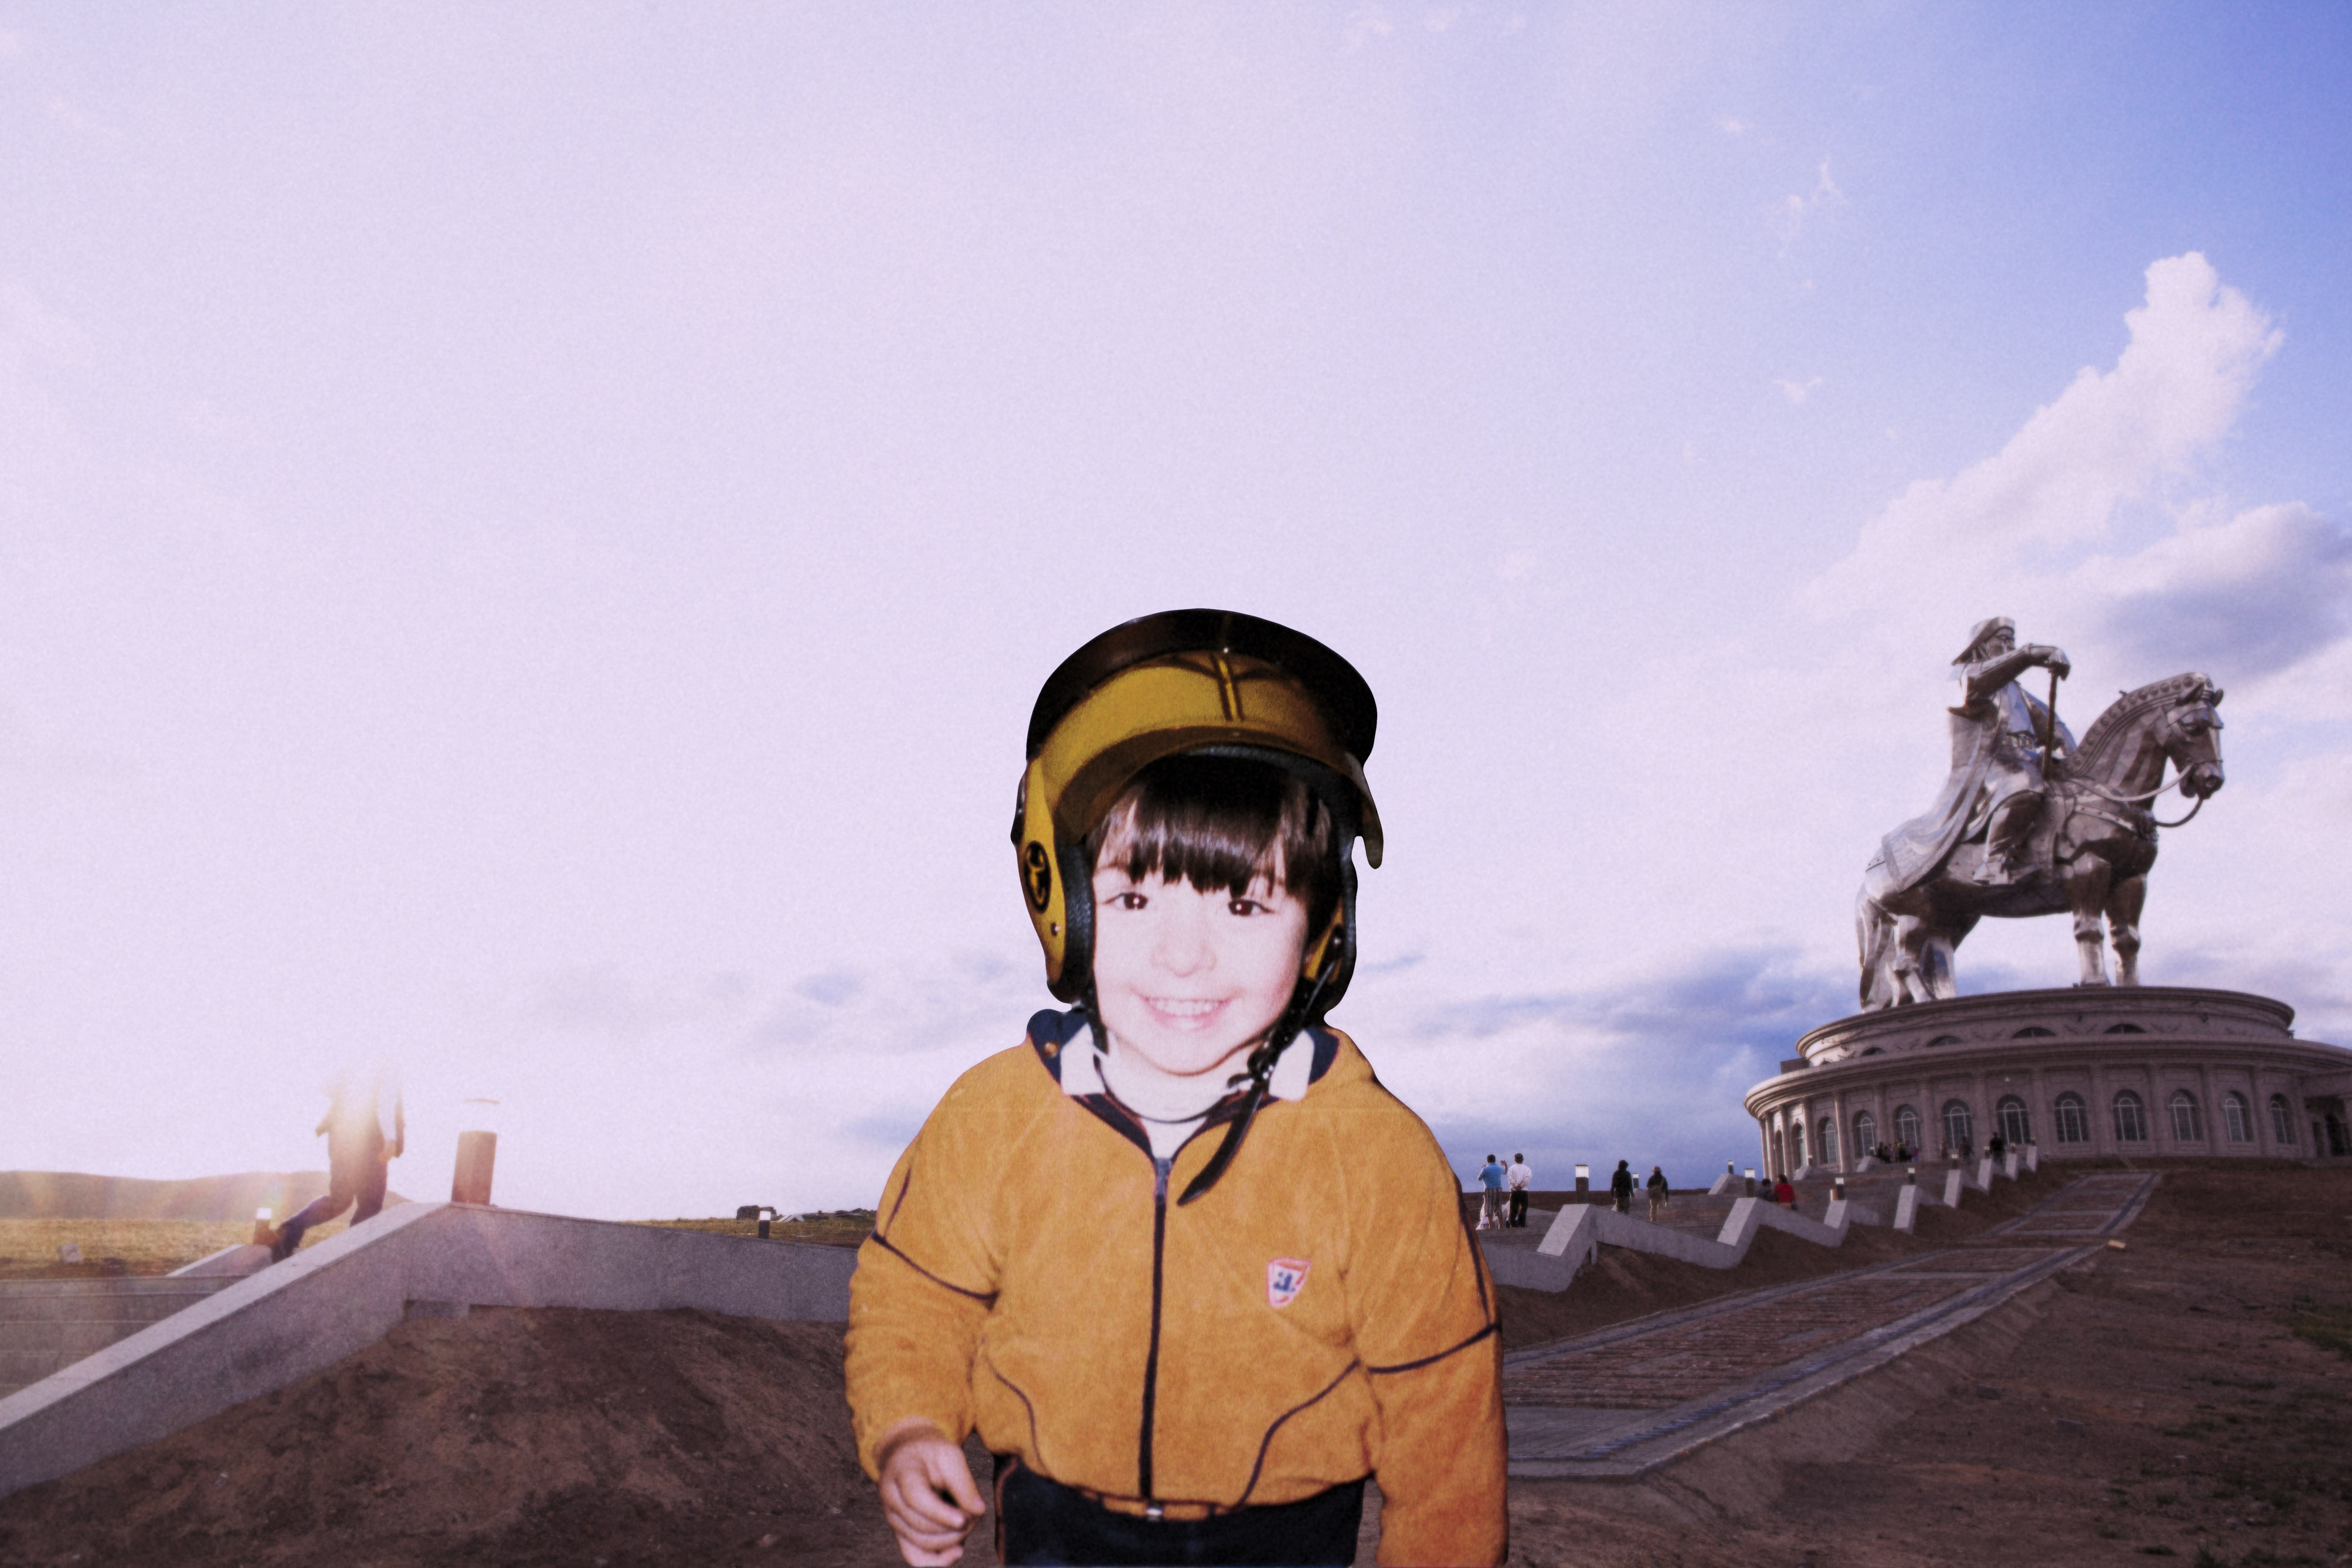 Erdene 1984/2010